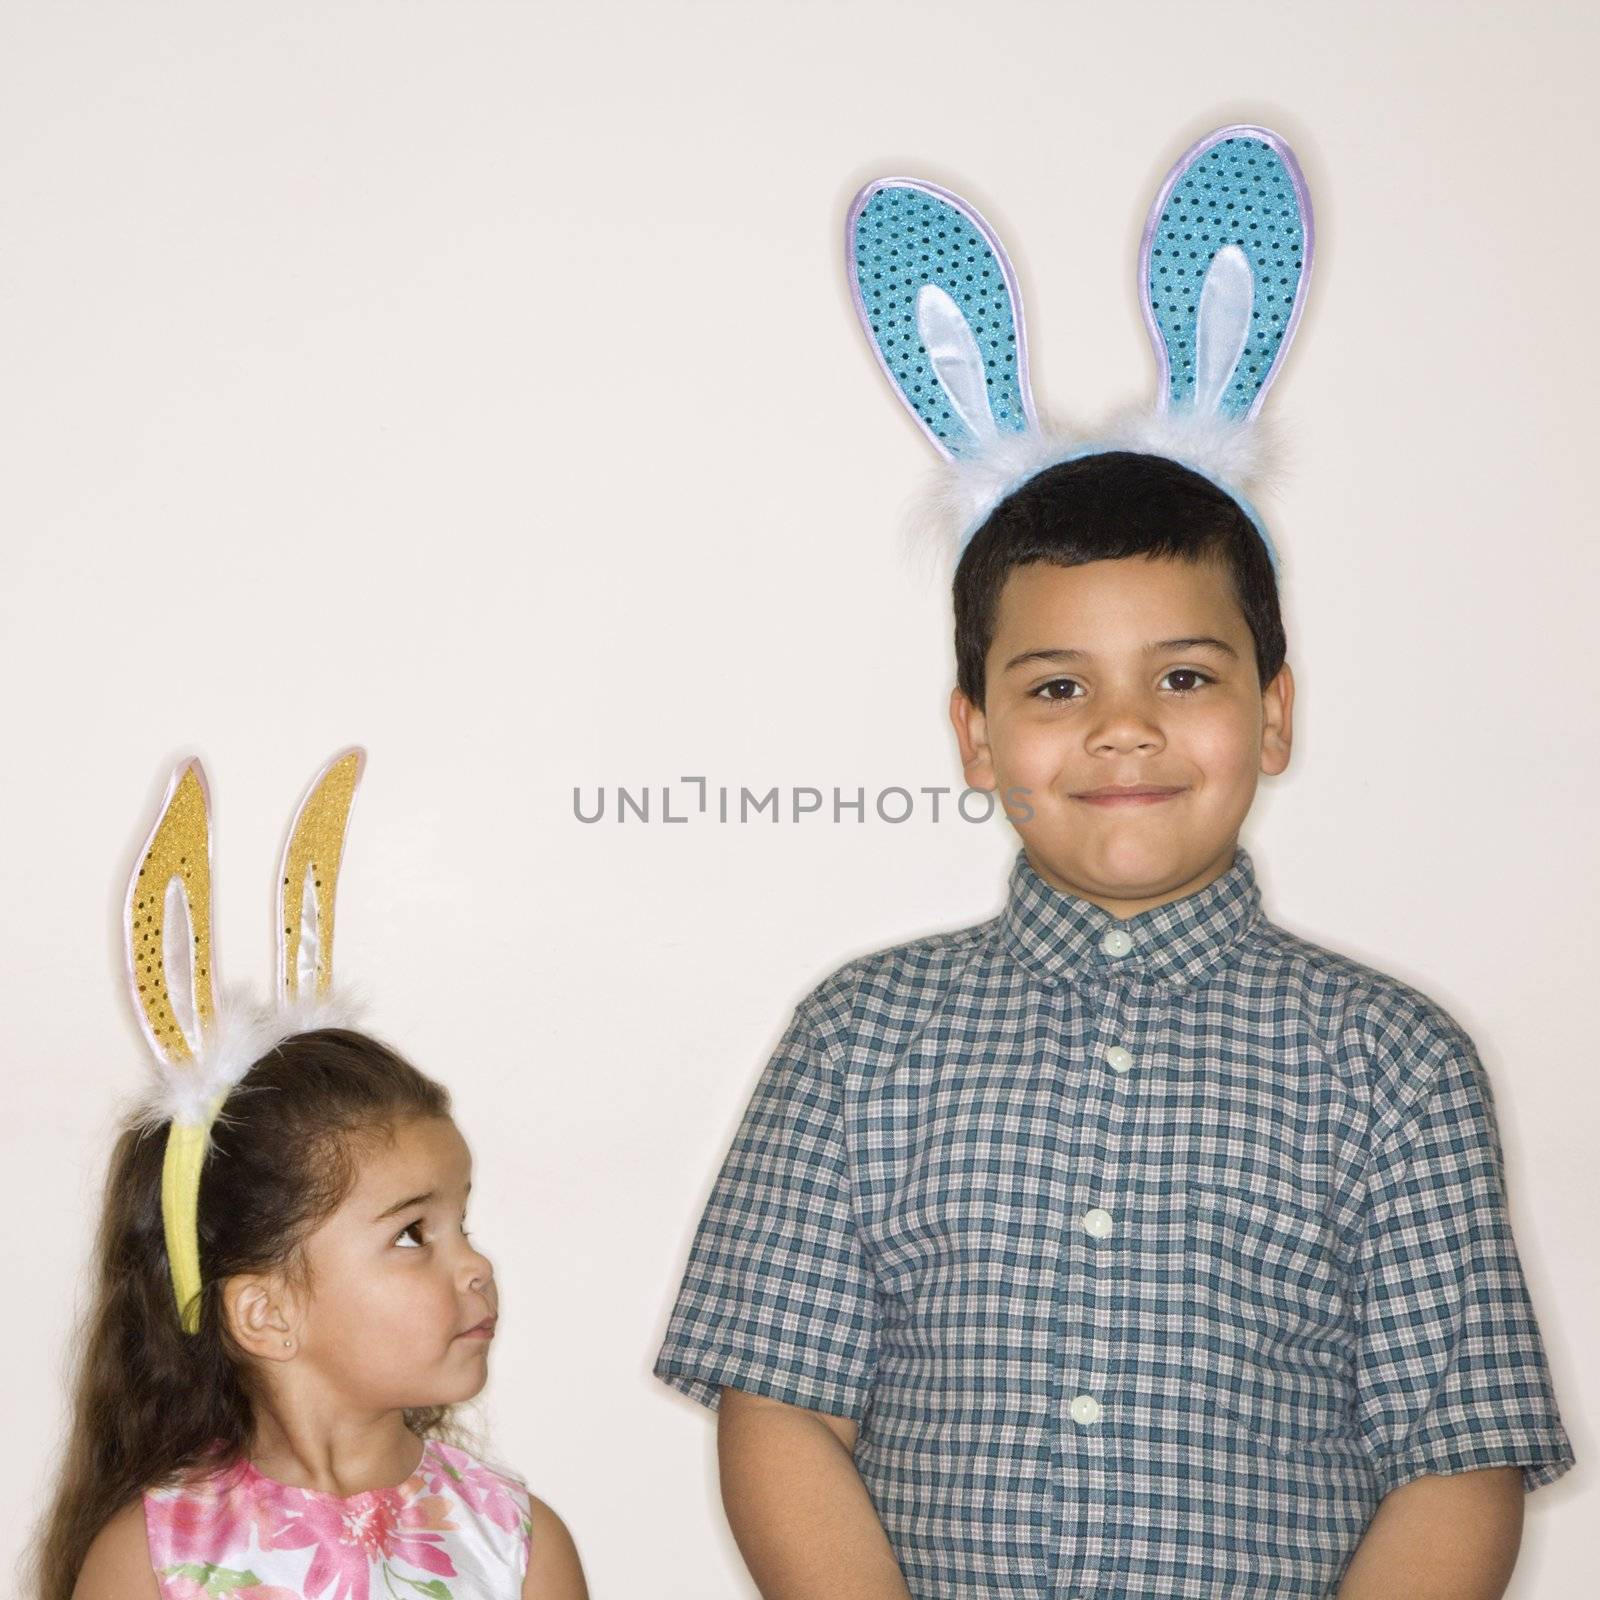 Kids wearing bunny ears. by iofoto